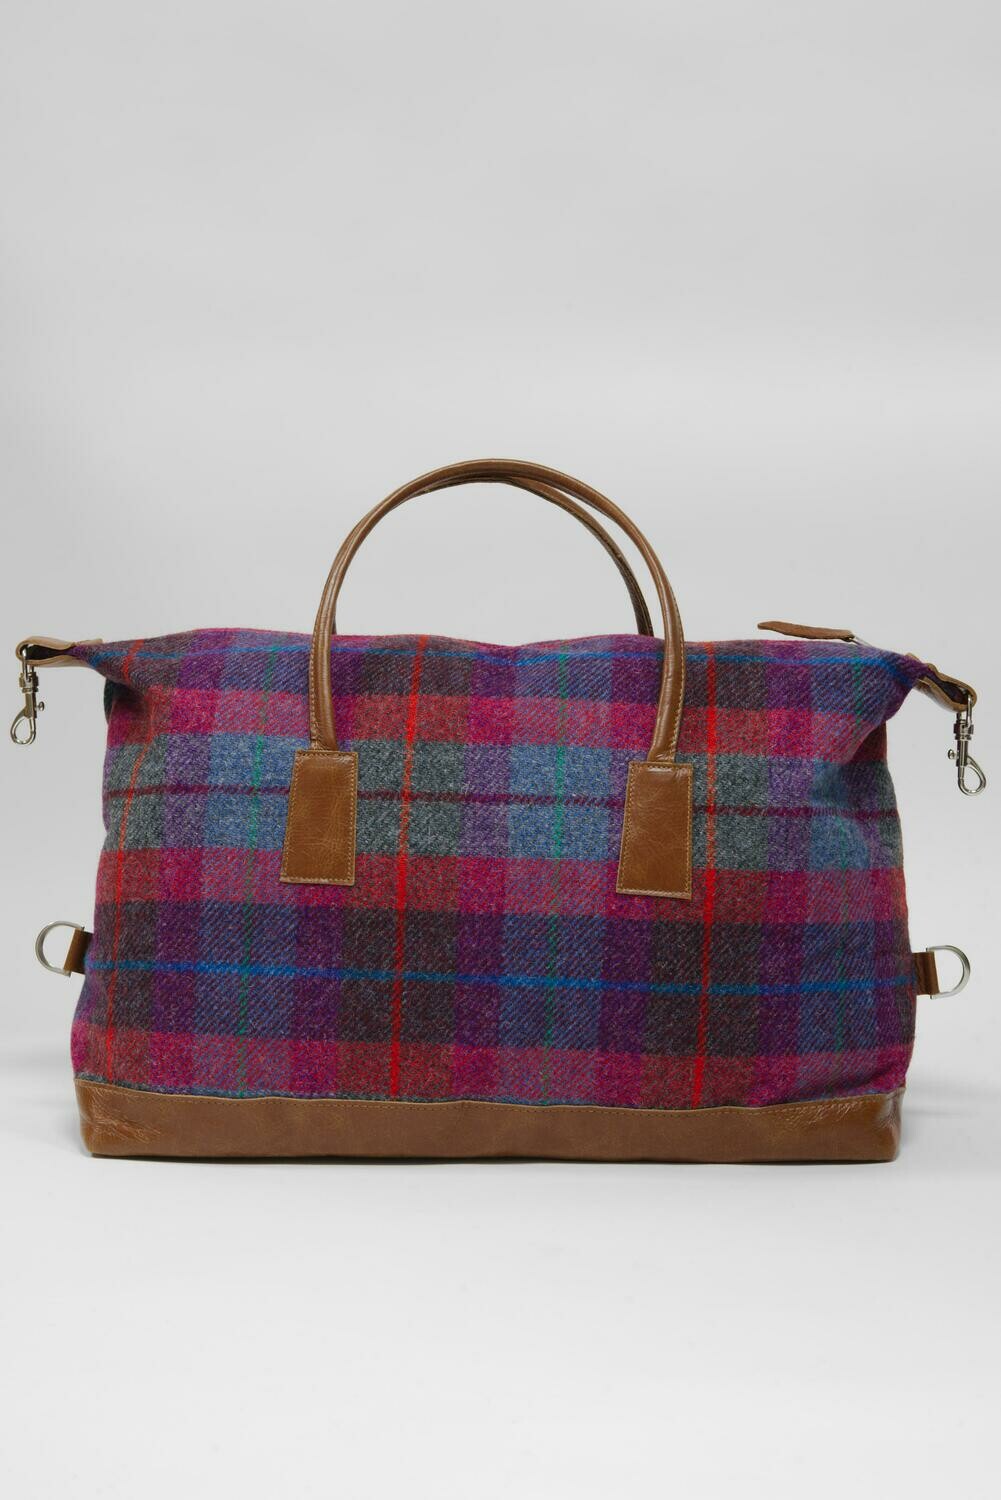 Harris Tweed Luggage Bag | A0115 (Tan Leather)